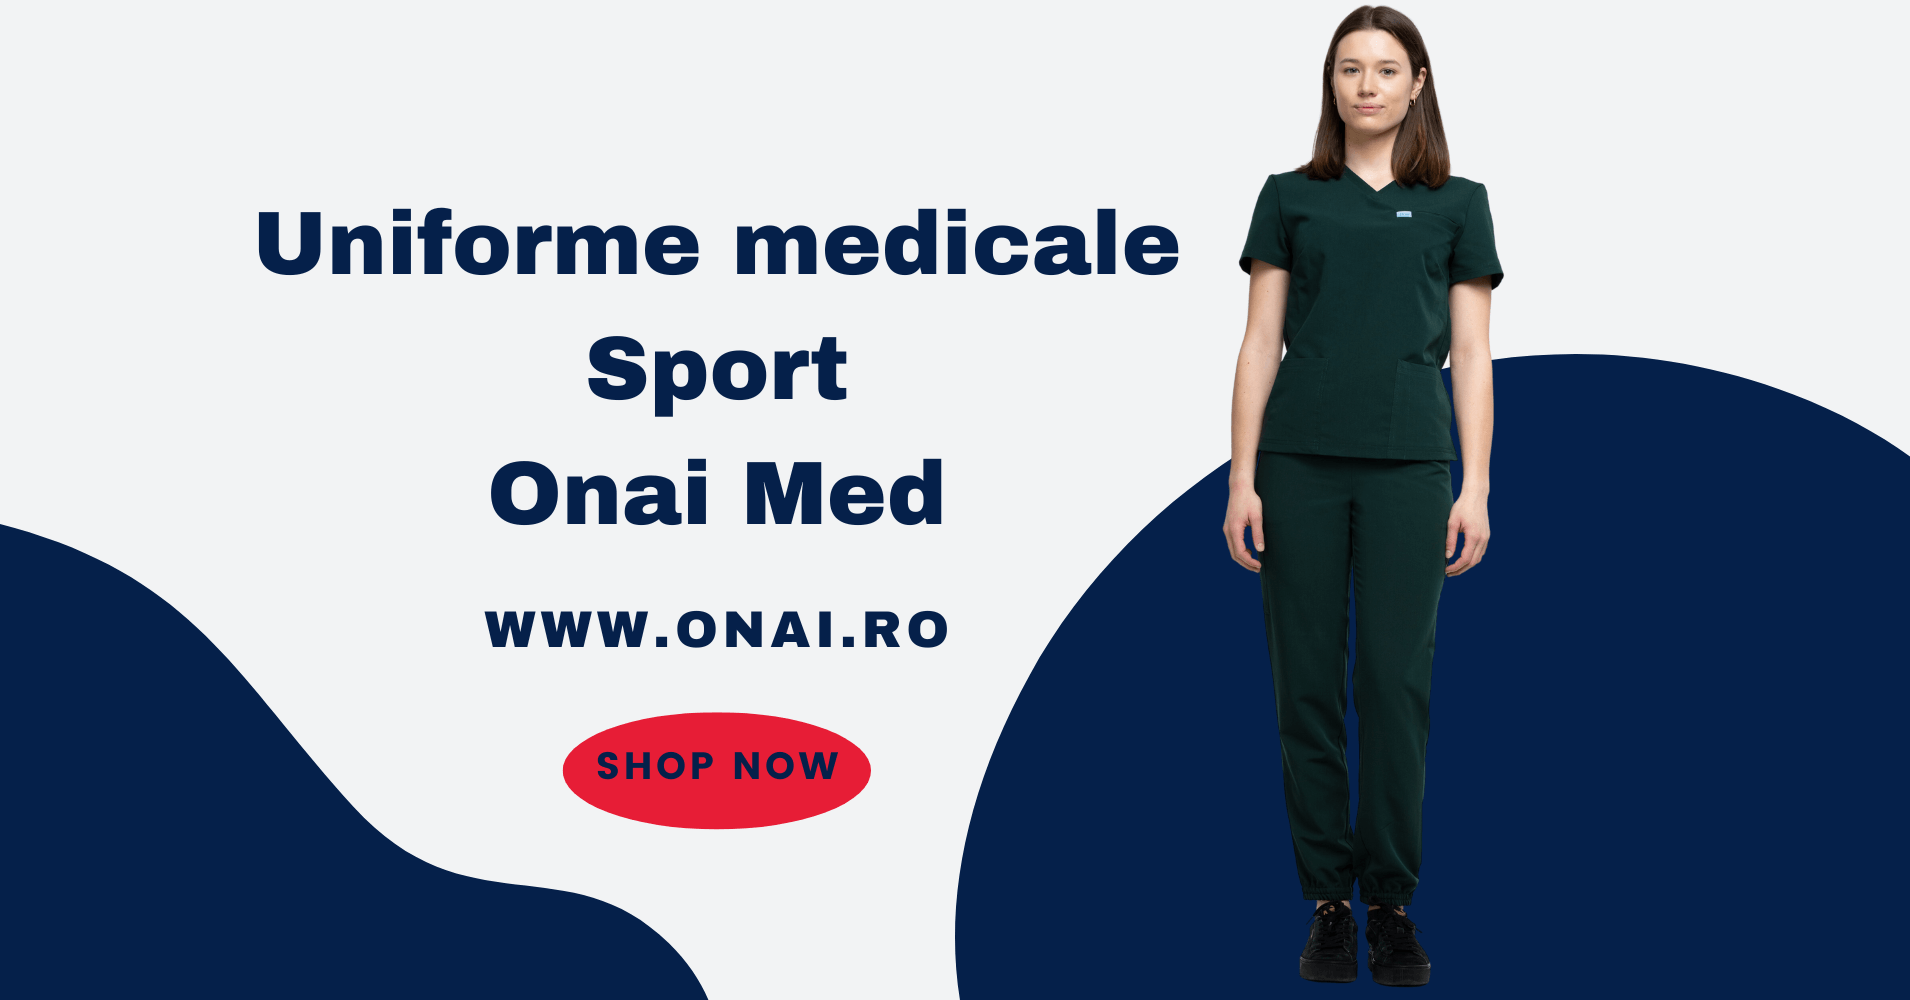 uniforme medicale sport onai med